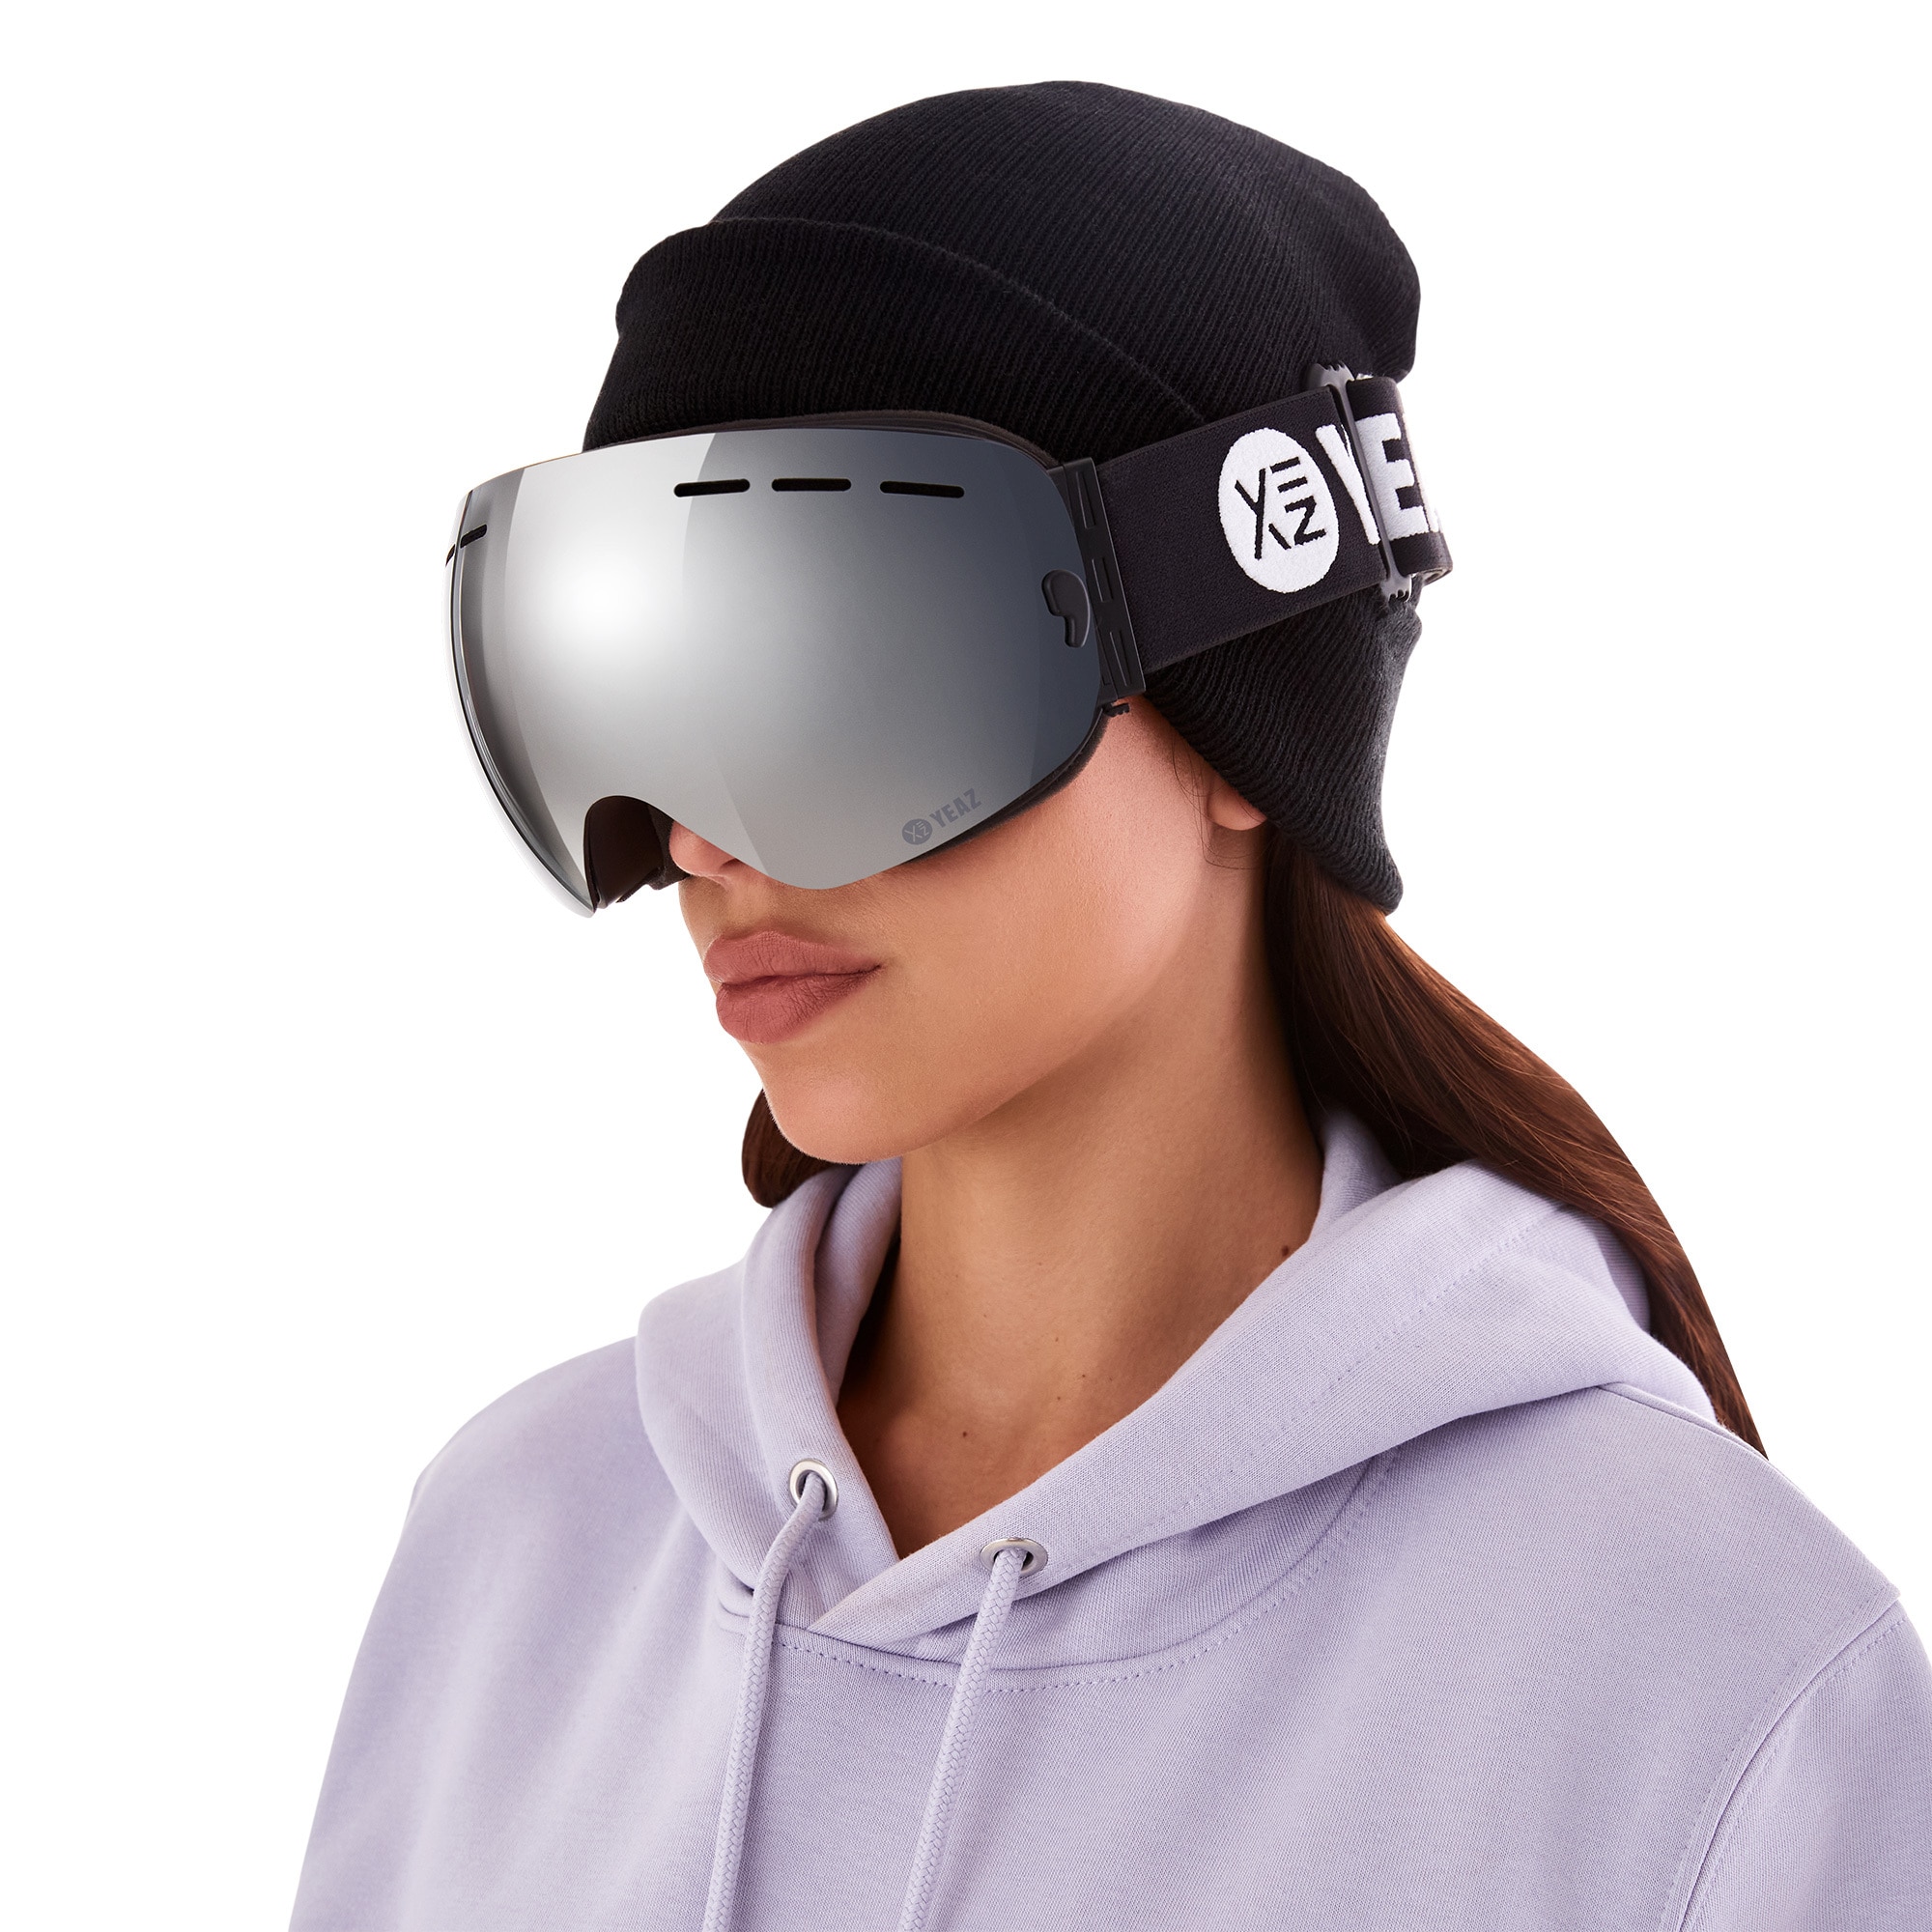 YEAZ Snowboardbrille »Ski- Snowboardbrille ohne Rahmen silber verspiegelt XTRM-SUMMIT«